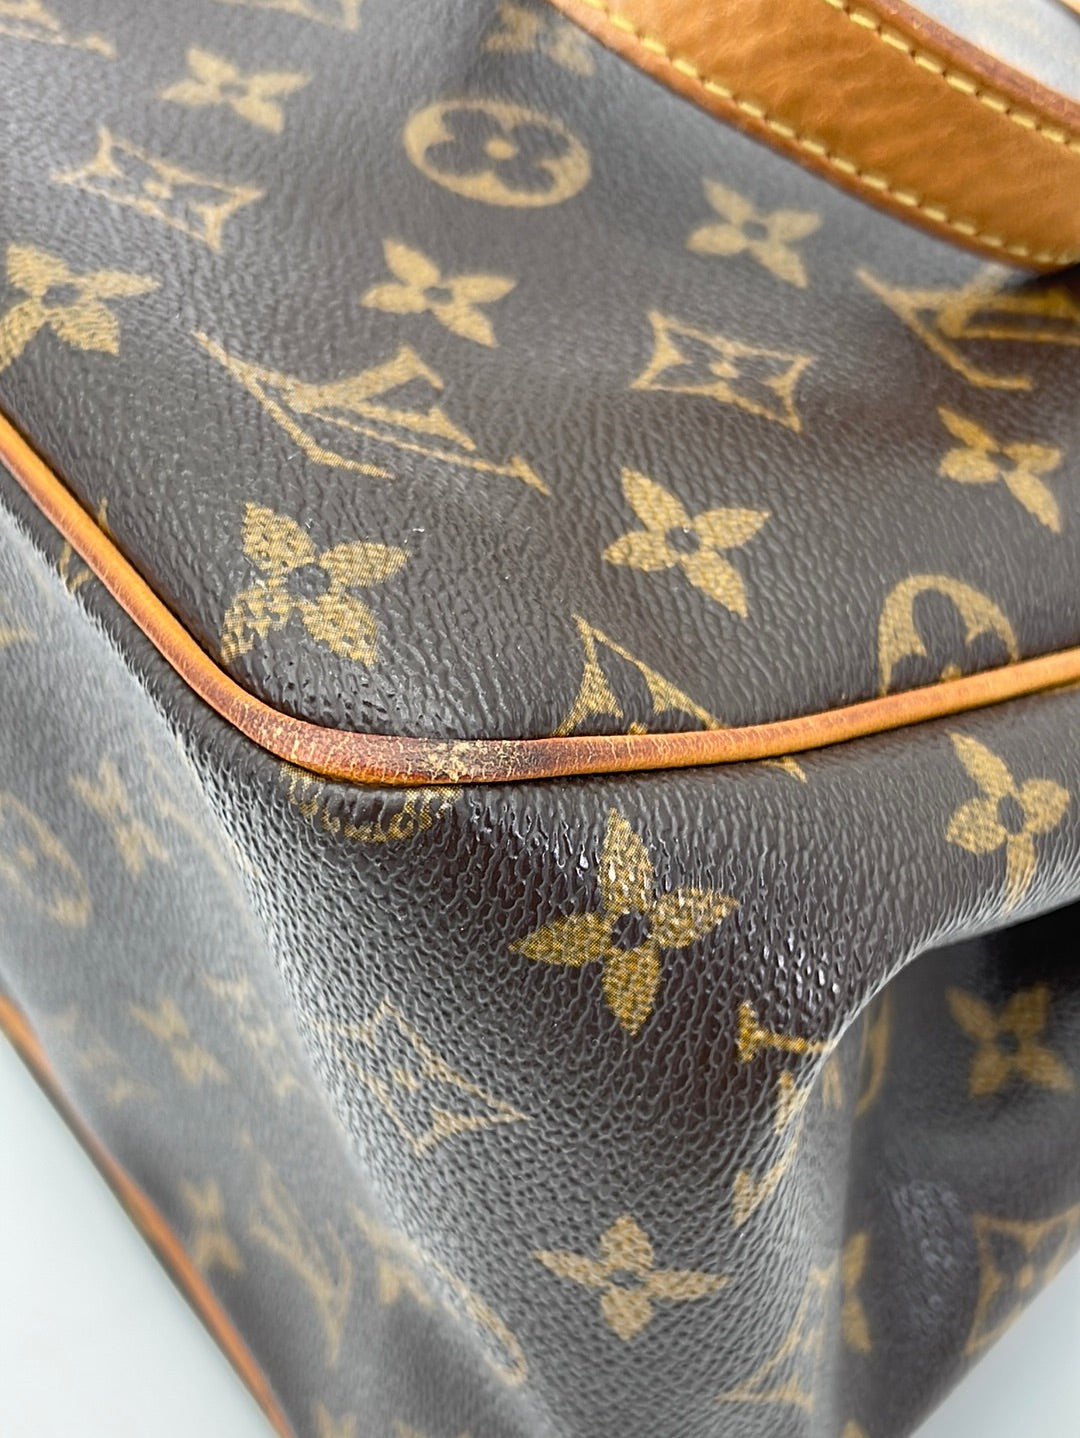 Louis Vuitton Batignolles Handbag 386960